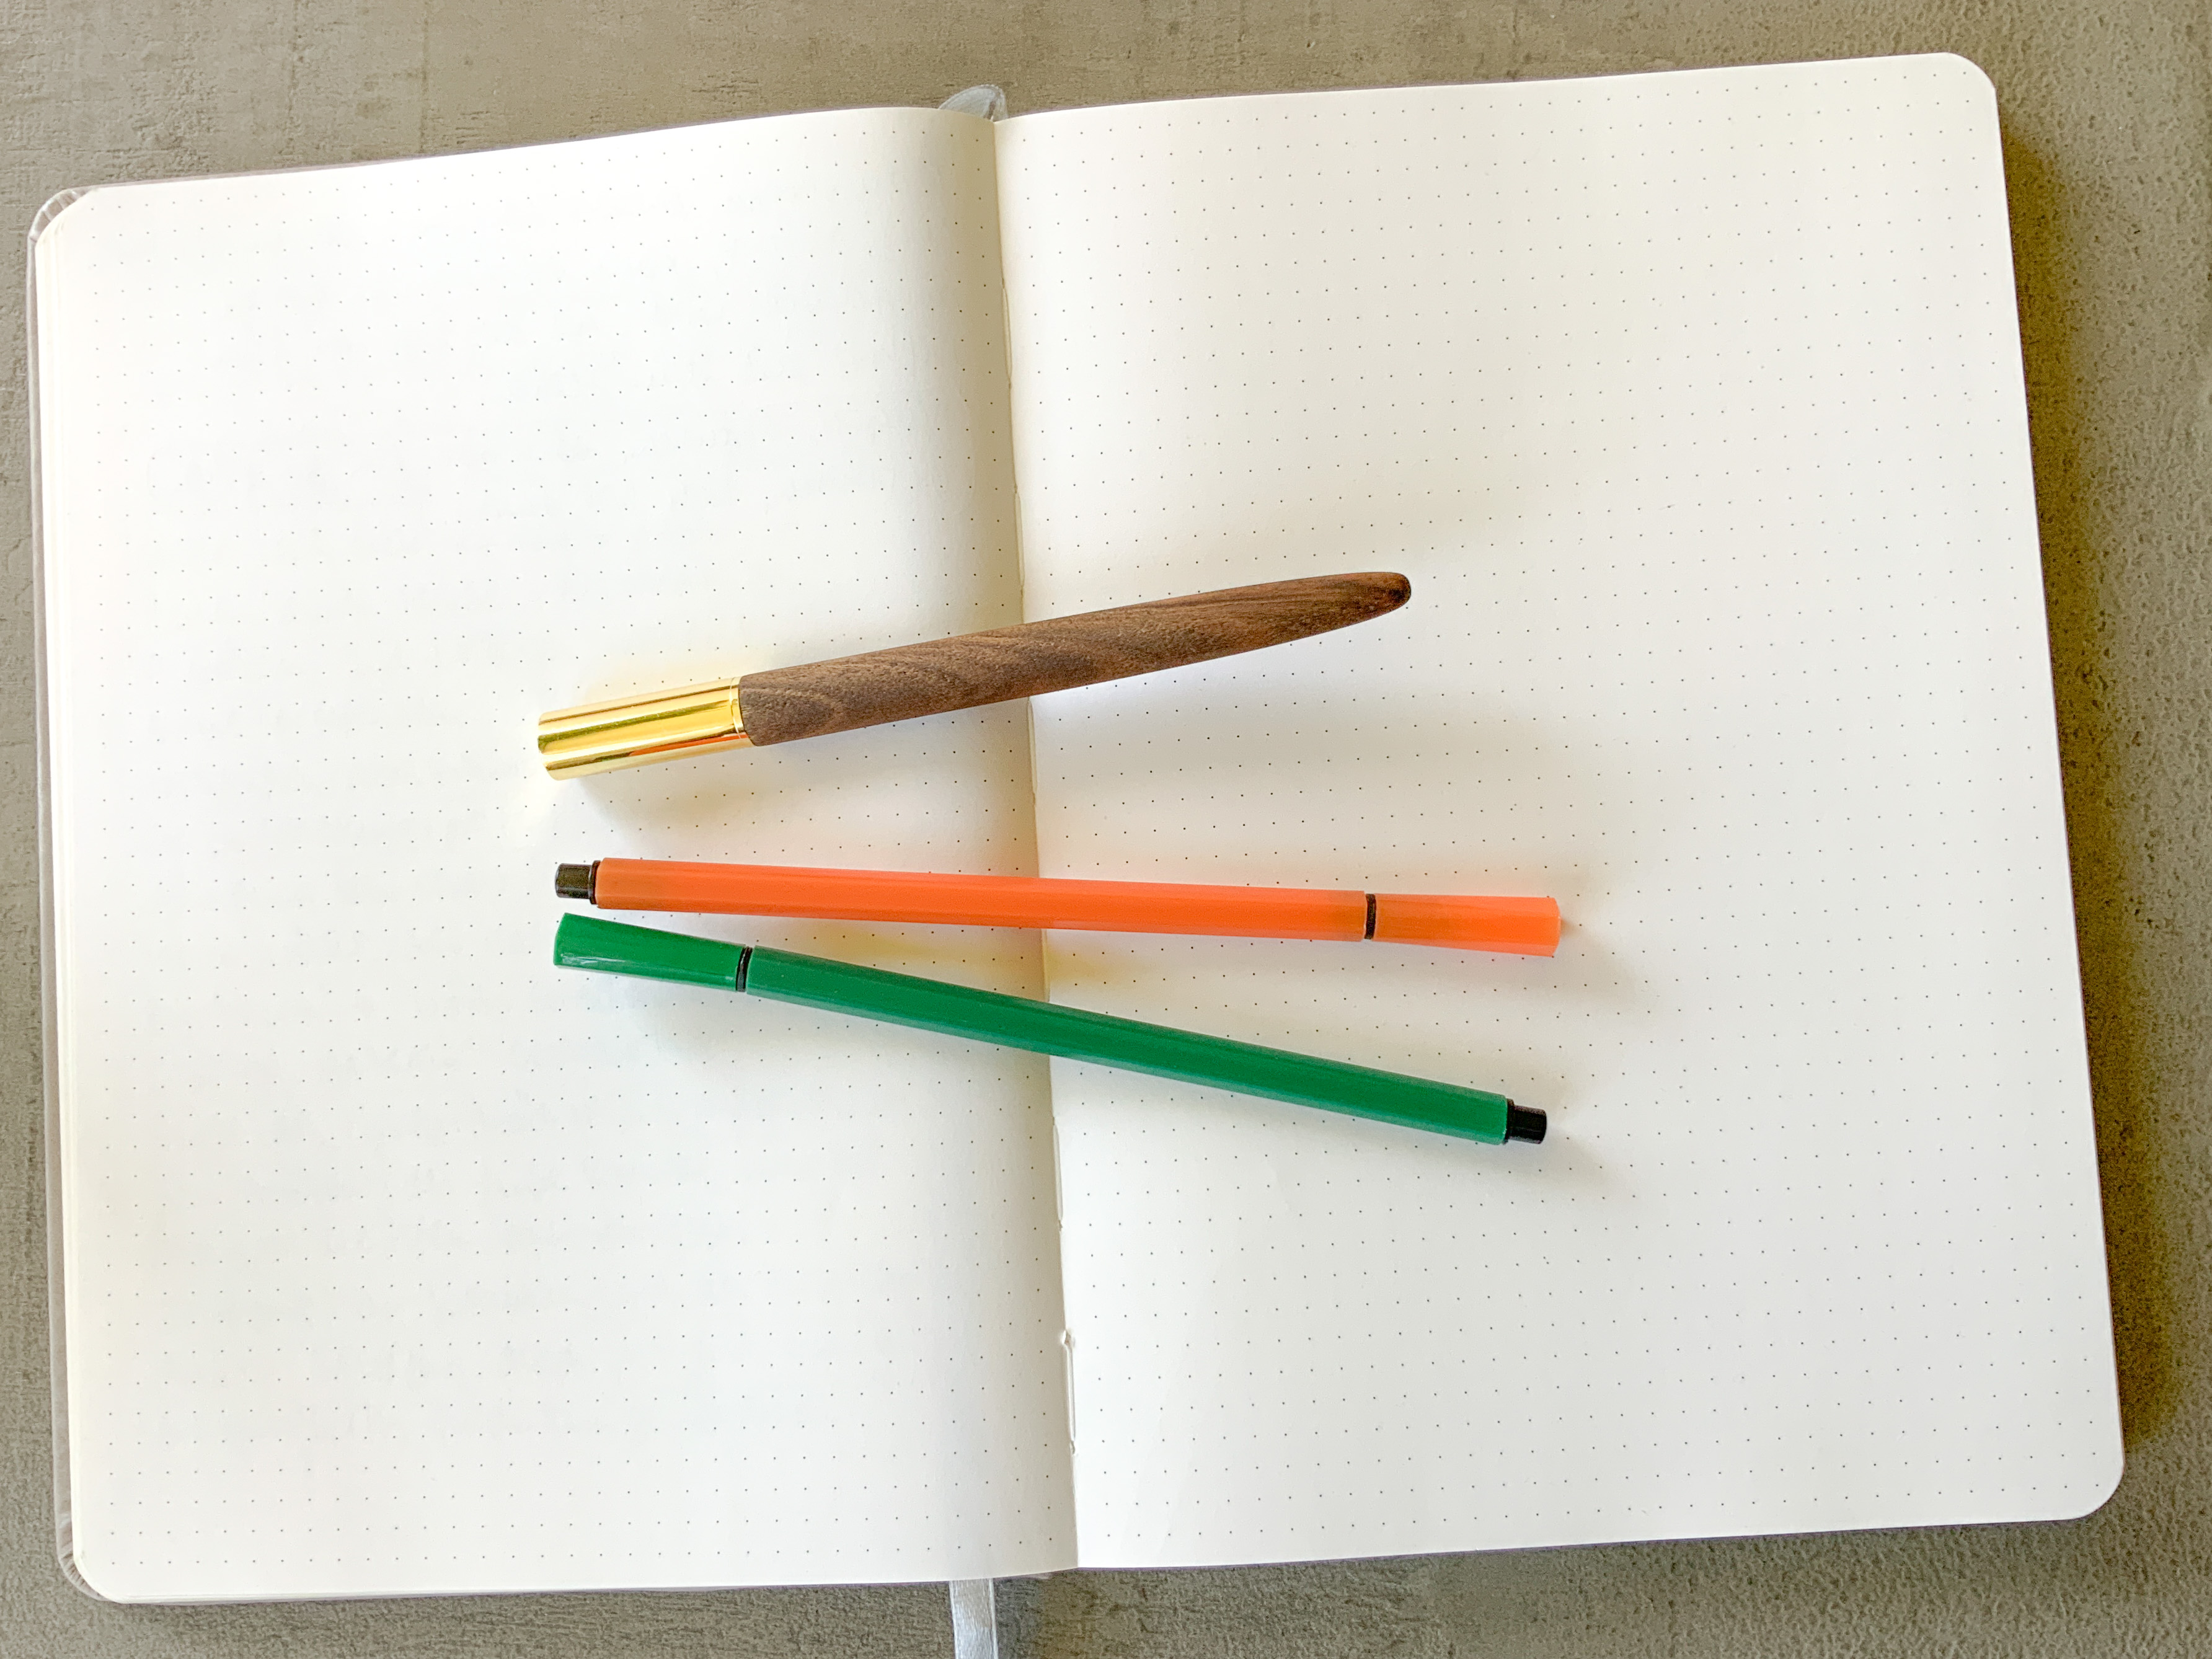 Ein aufgeschlagenes Notizbuch und drei Stifte.